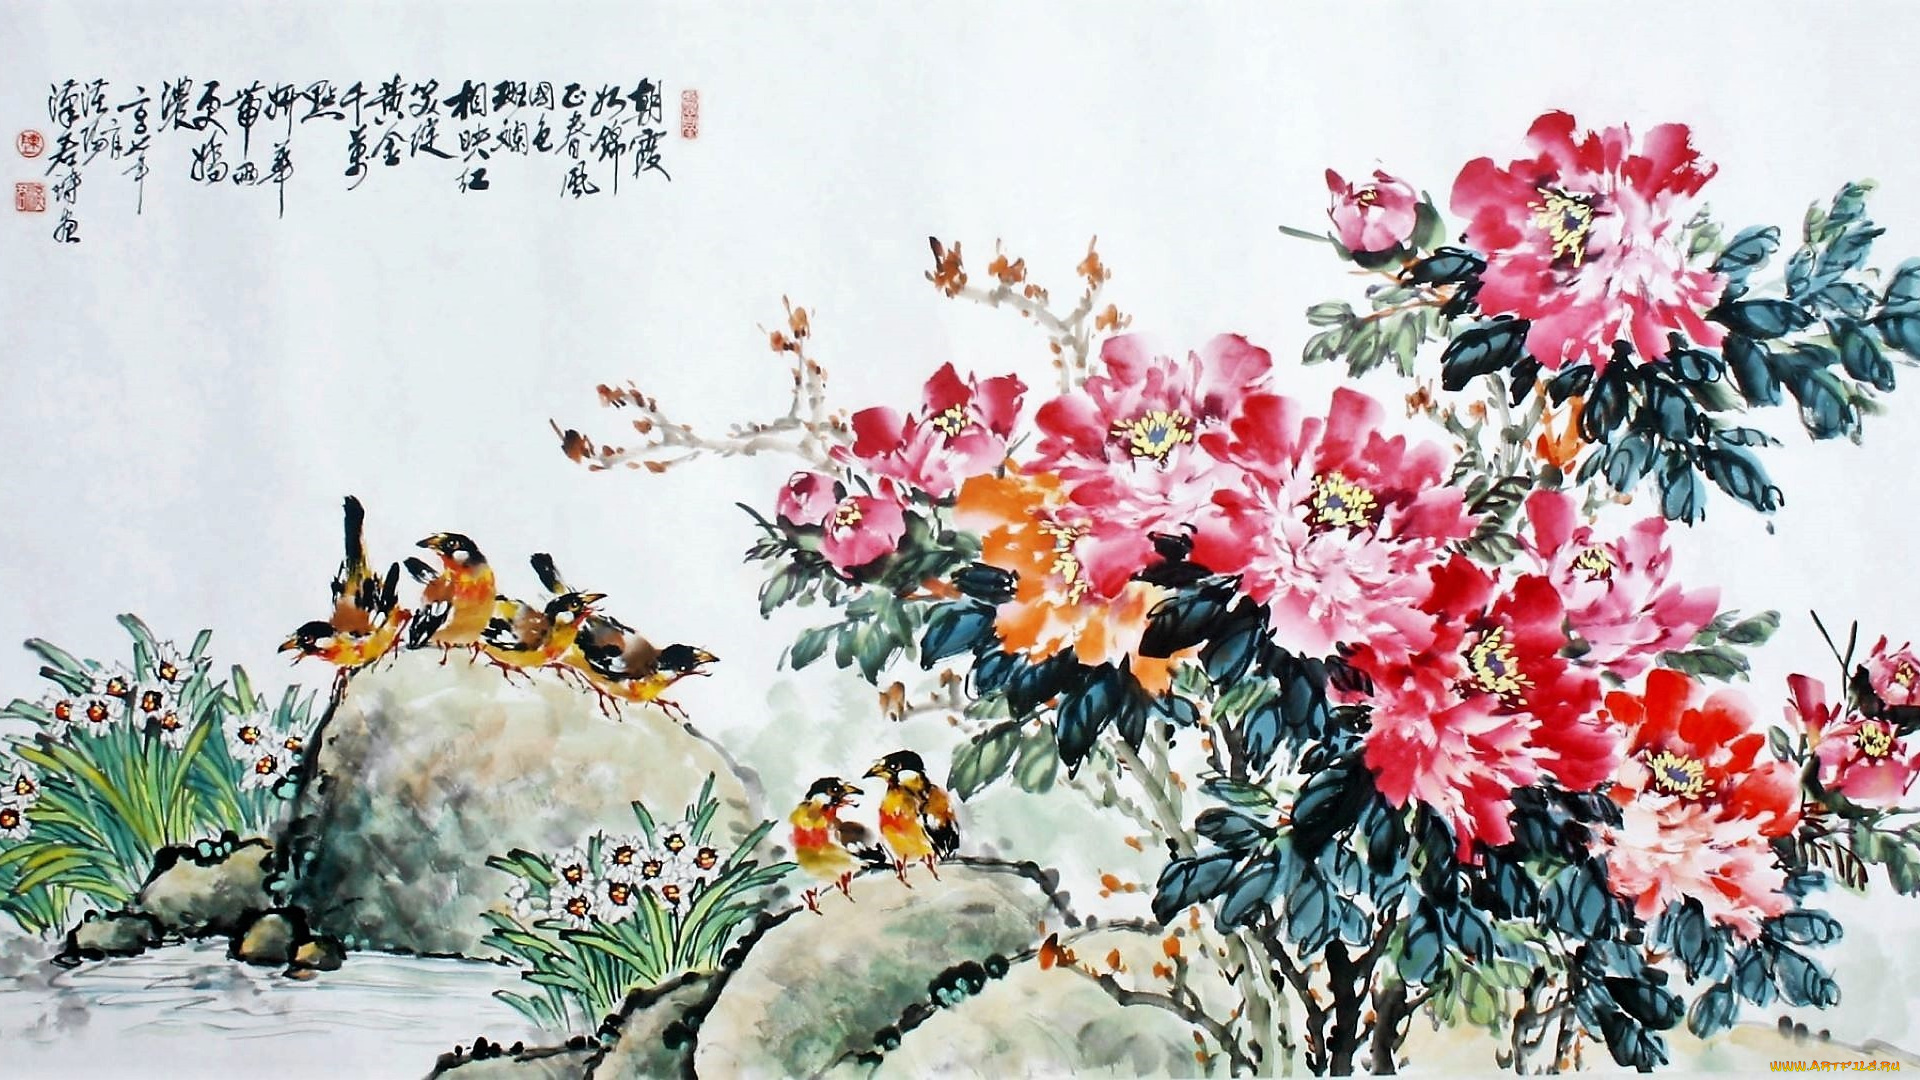 рисованное, цветы, птицы, камни